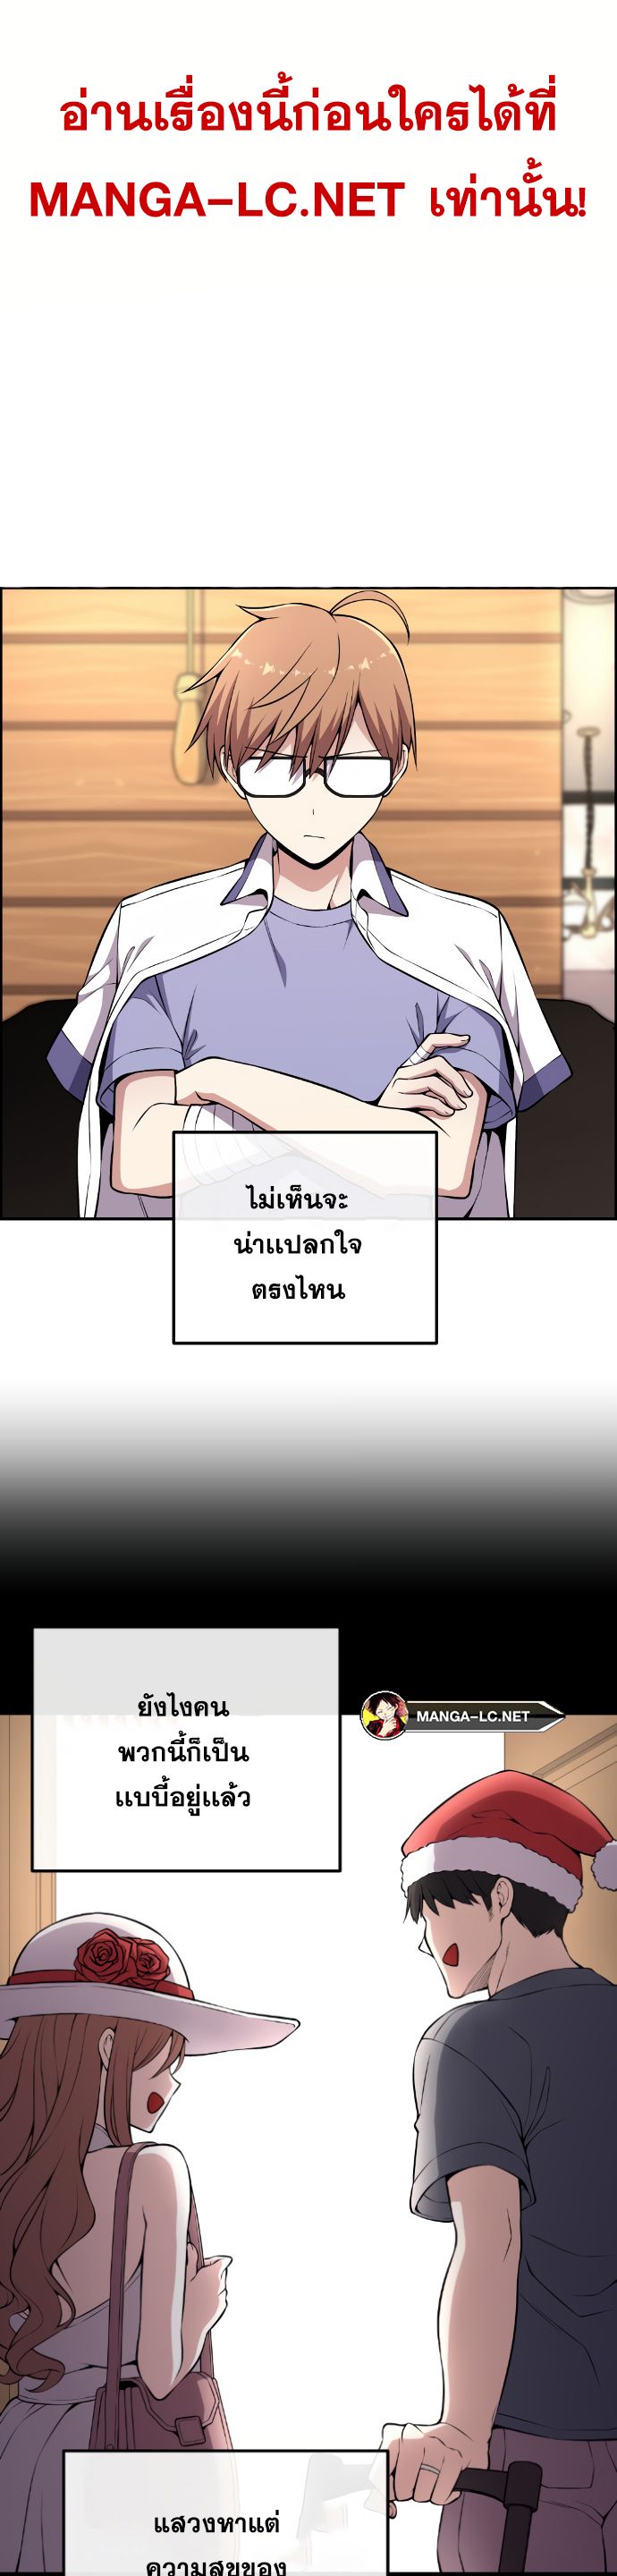 Webtoon Character Na Kang Lim ตอนที่ 139 (14)